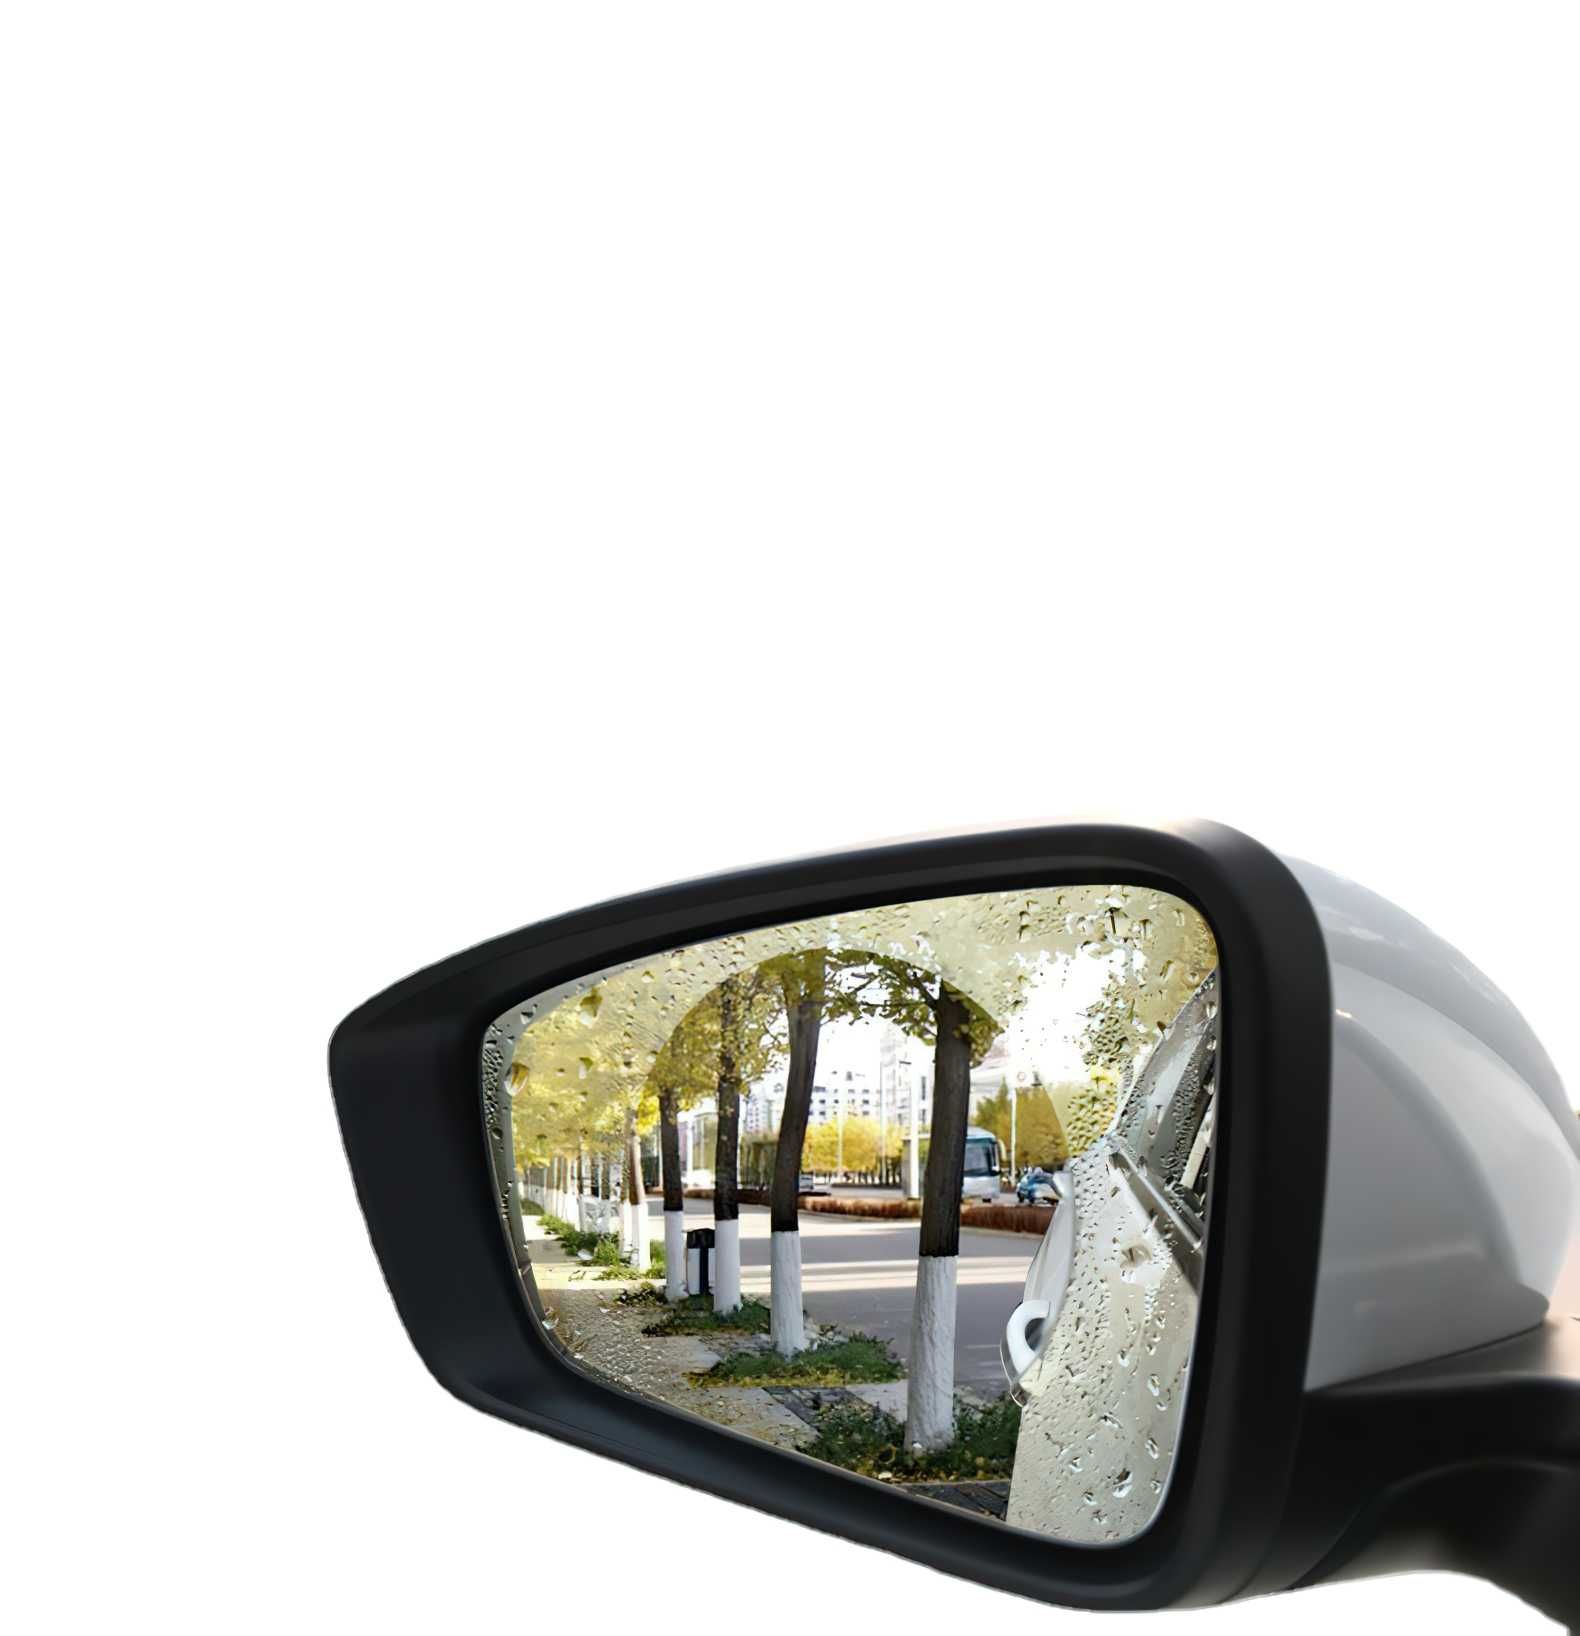 Пленка защитная антидождь для боковых зеркал автомобиля